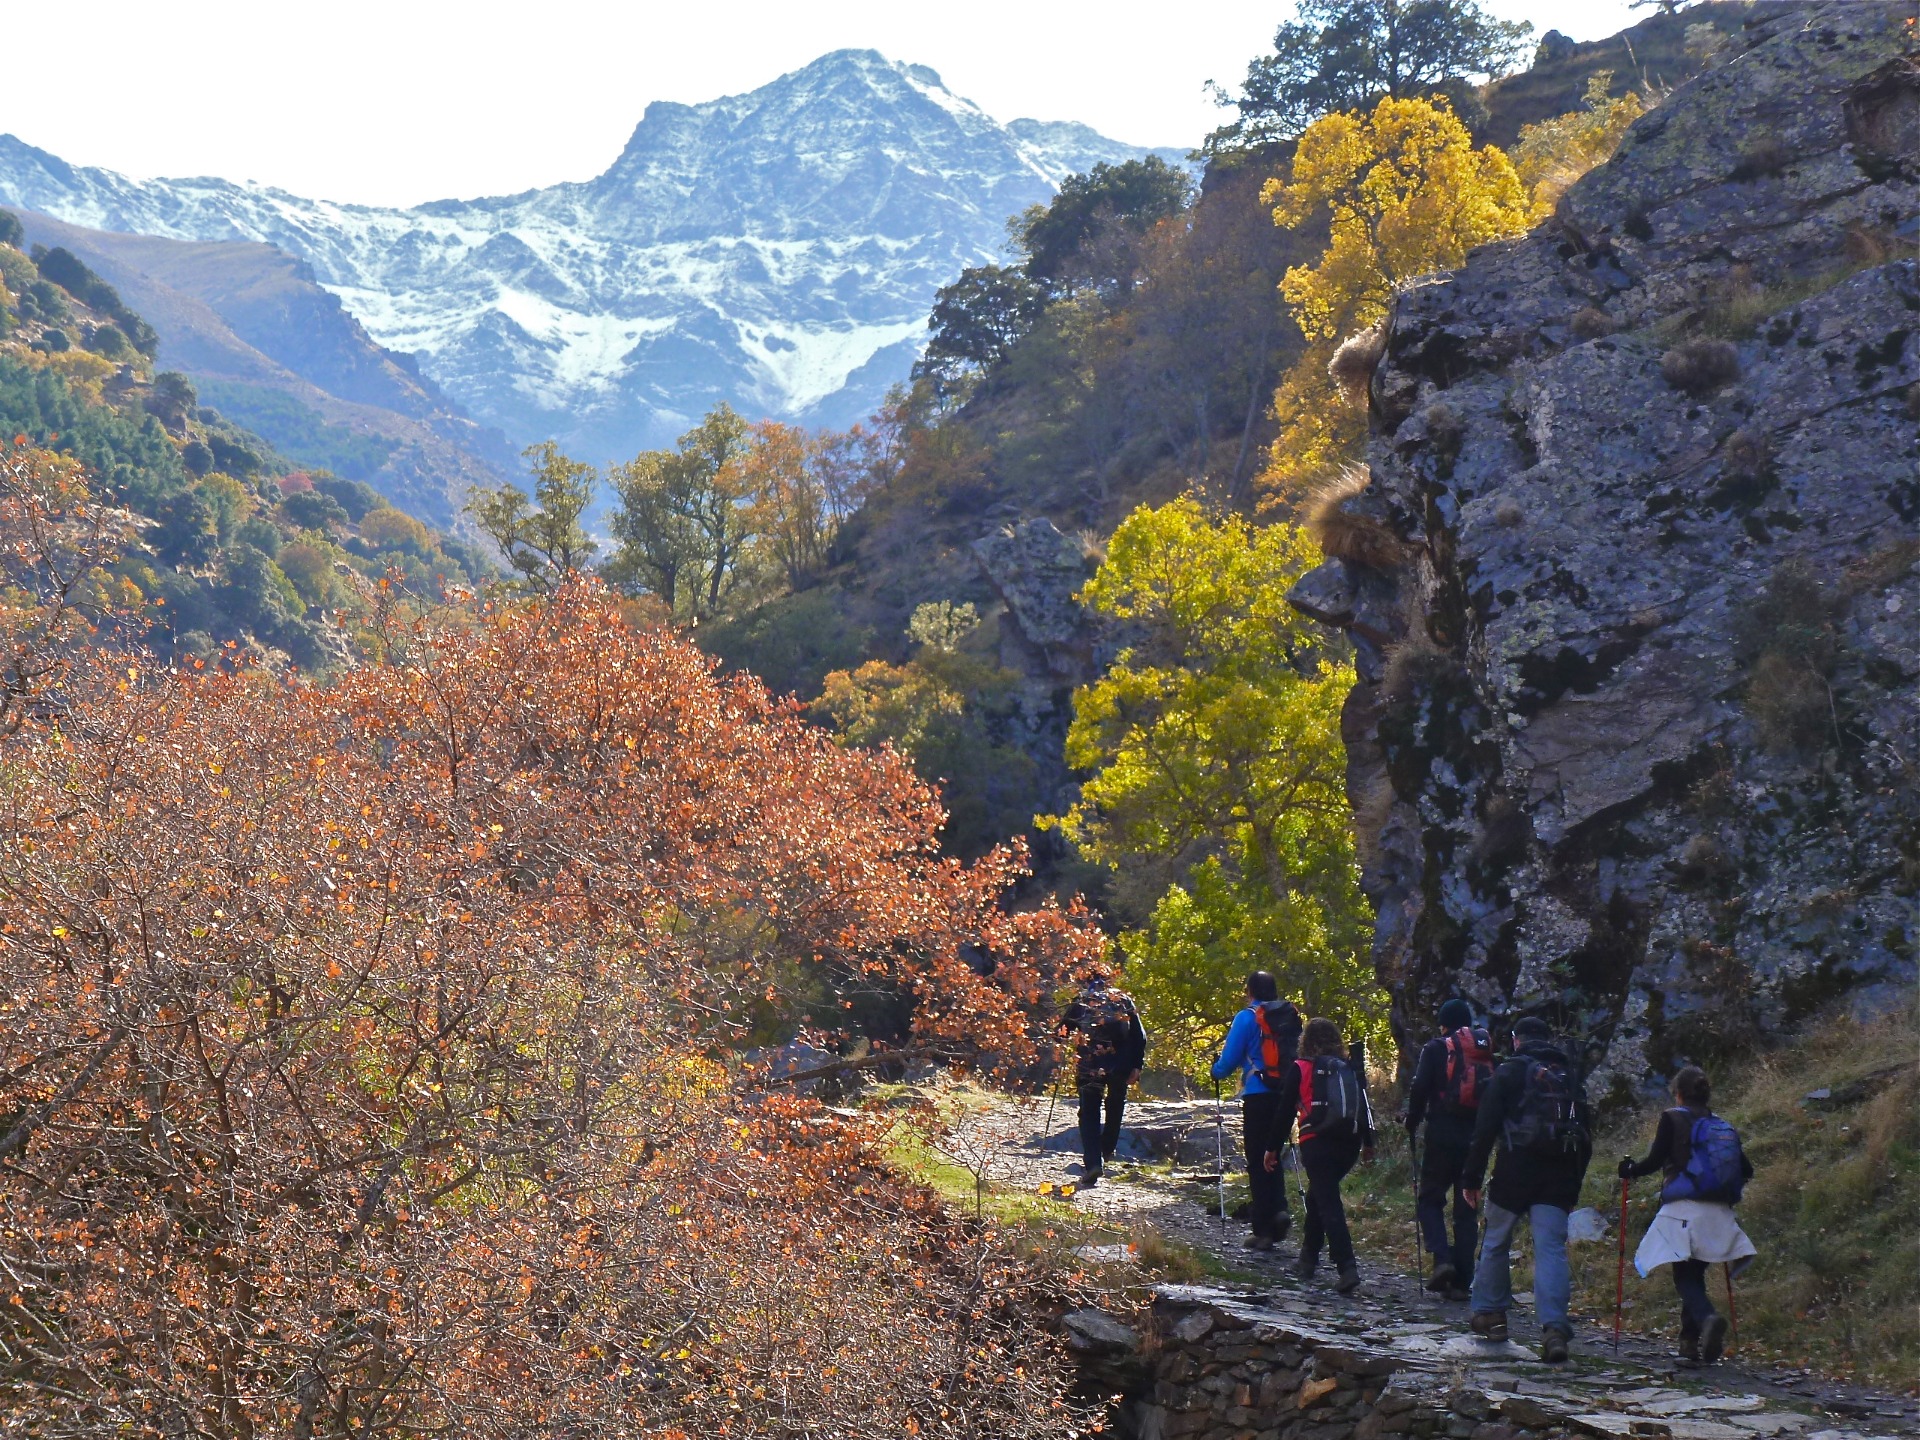  Varias personas haciendo senderismo por una montana con un fondo de bosque